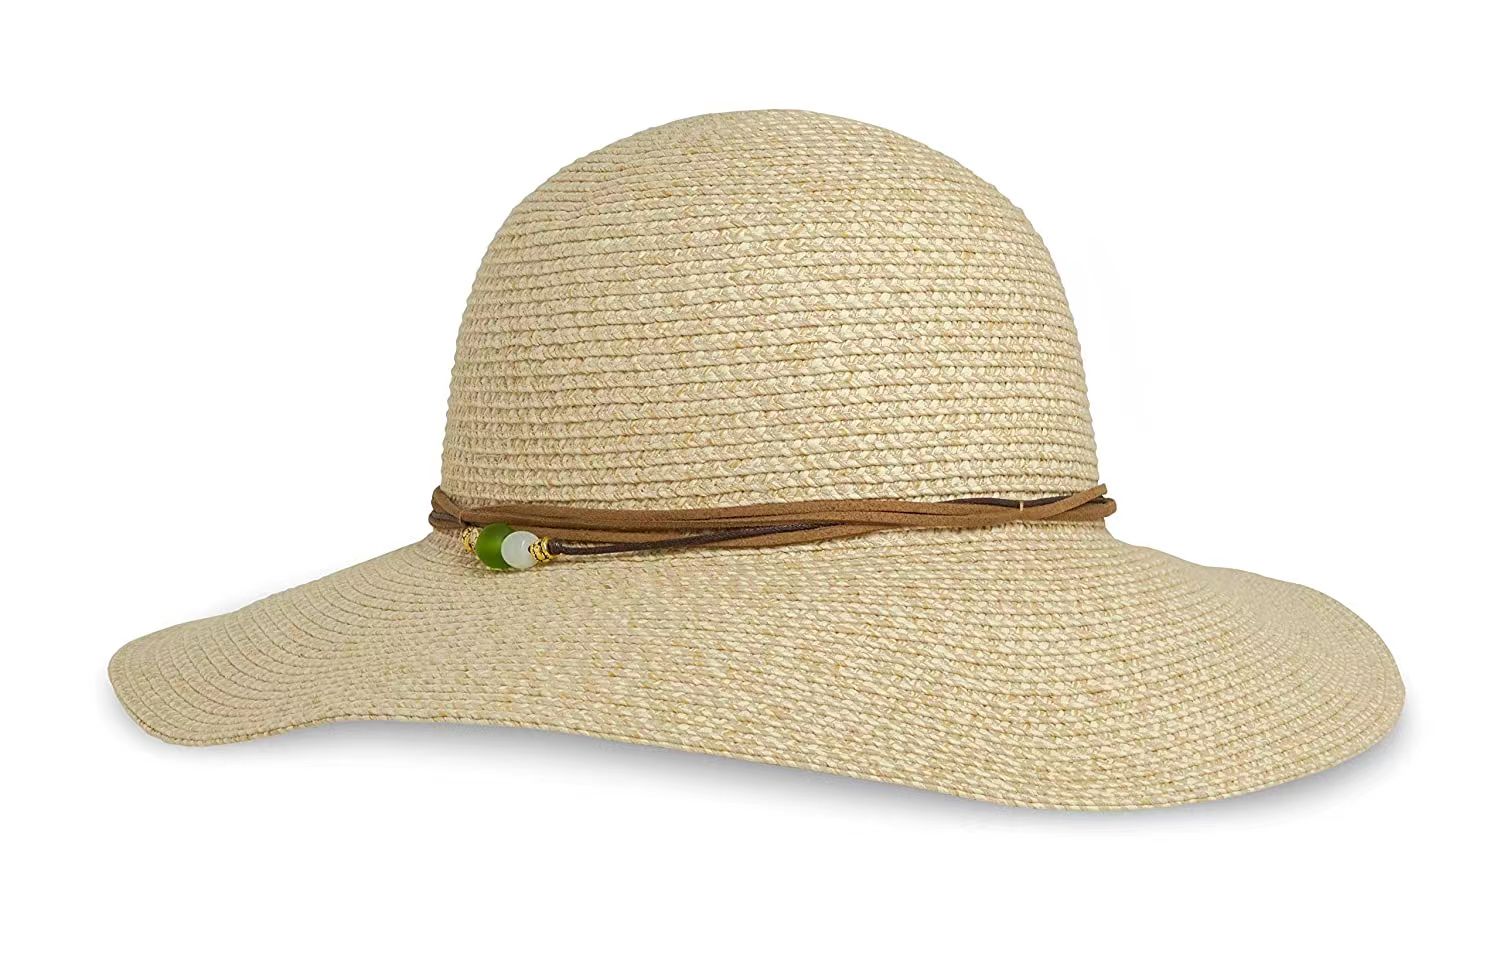 Tři tipy pro údržbu slaměného klobouku